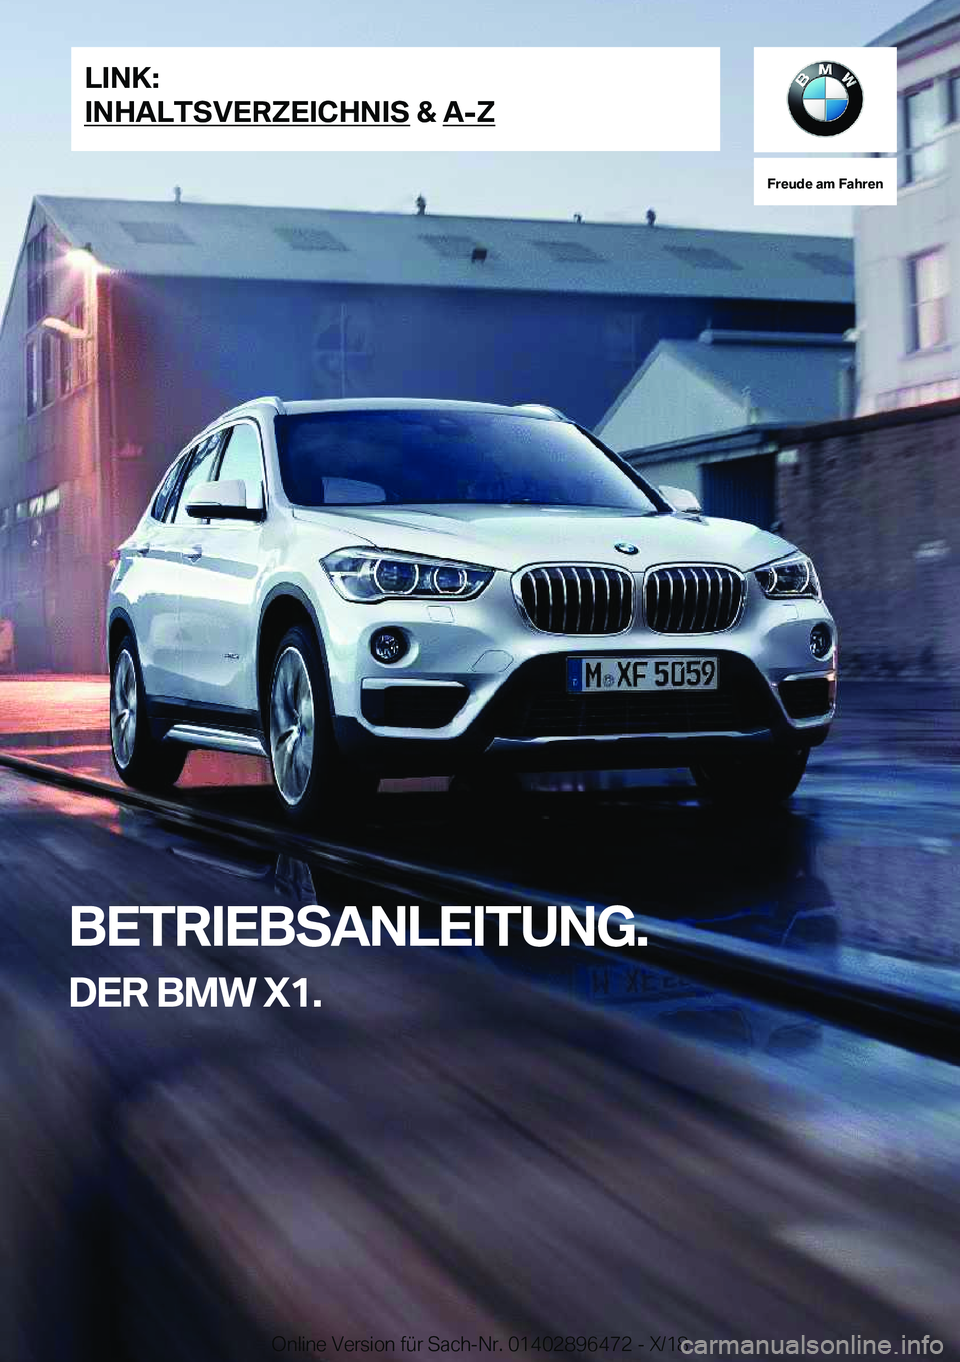 BMW X1 2019  Betriebsanleitungen (in German) �F�r�e�u�d�e��a�m��F�a�h�r�e�n
�B�E�T�R�I�E�B�S�A�N�L�E�I�T�U�N�G�.�D�E�R��B�M�W��X�1�.�L�I�N�K�:
�I�N�H�A�L�T�S�V�E�R�Z�E�I�C�H�N�I�S��&��A�-�Z�O�n�l�i�n�e��V�e�r�s�i�o�n��f�